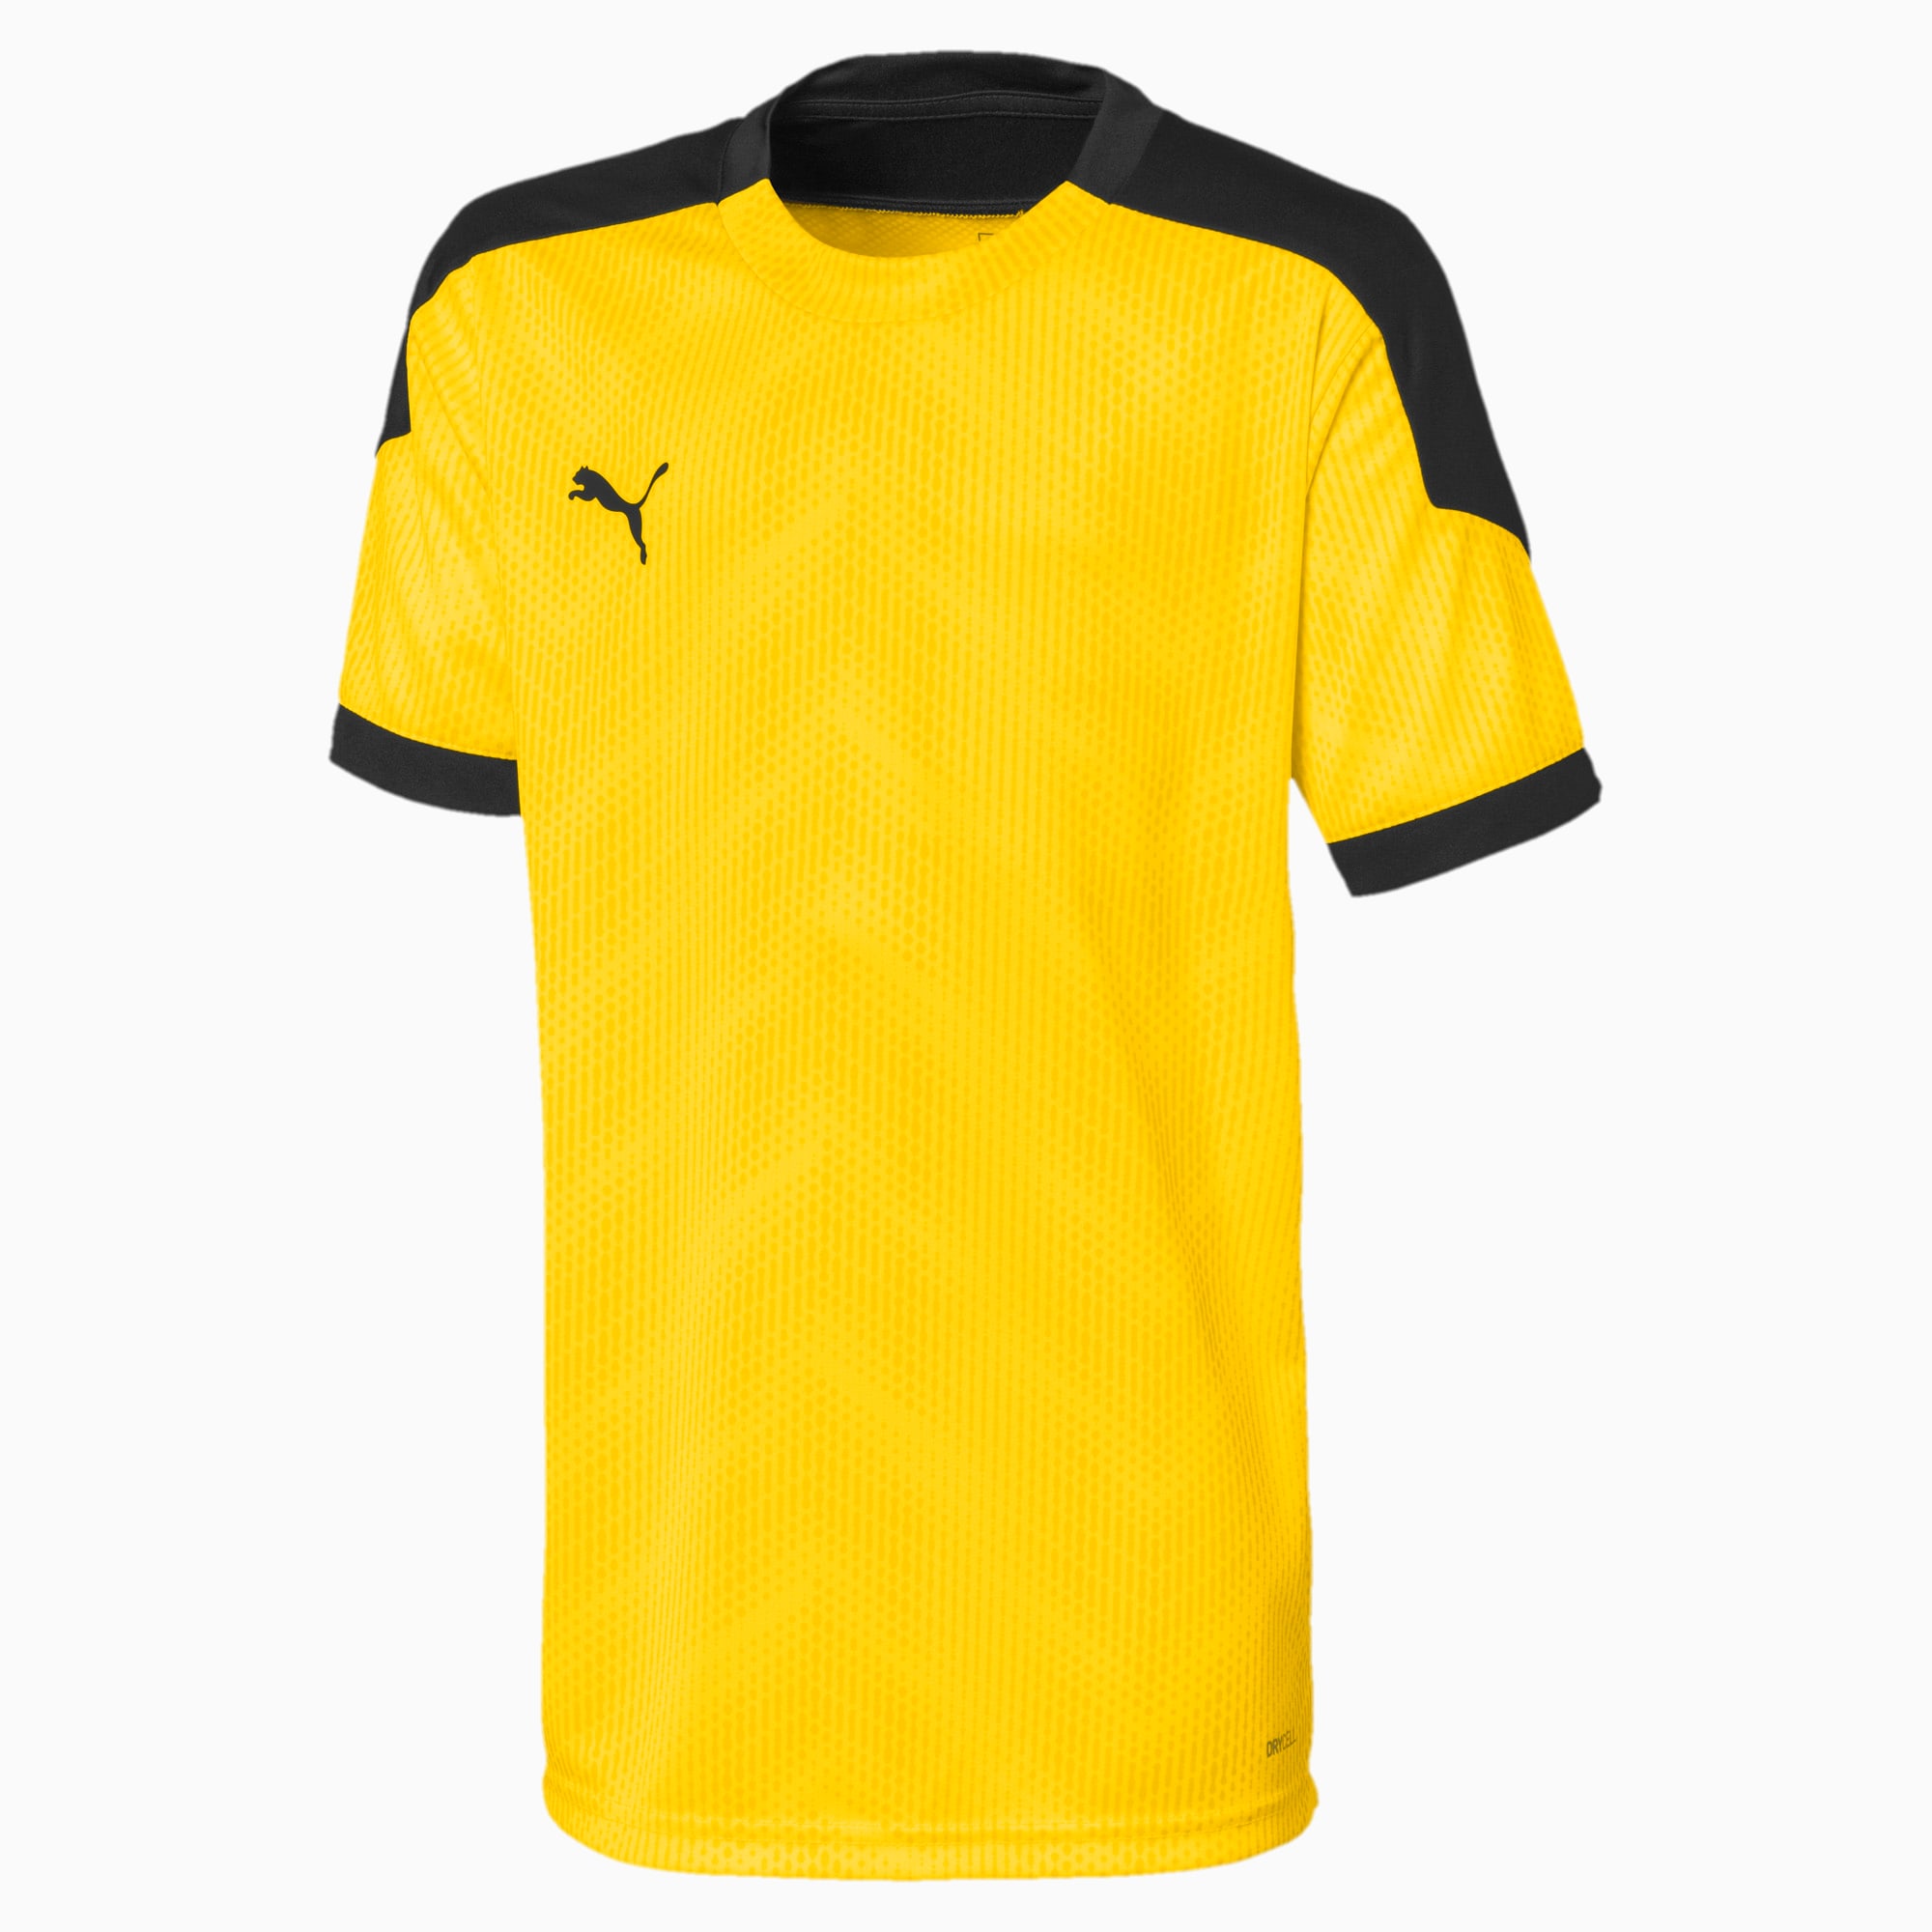 Image of PUMA ftblNXT Graphic Kinder Fußball T-Shirt | Mit Aucun | Gelb/Schwarz | Größe: 152